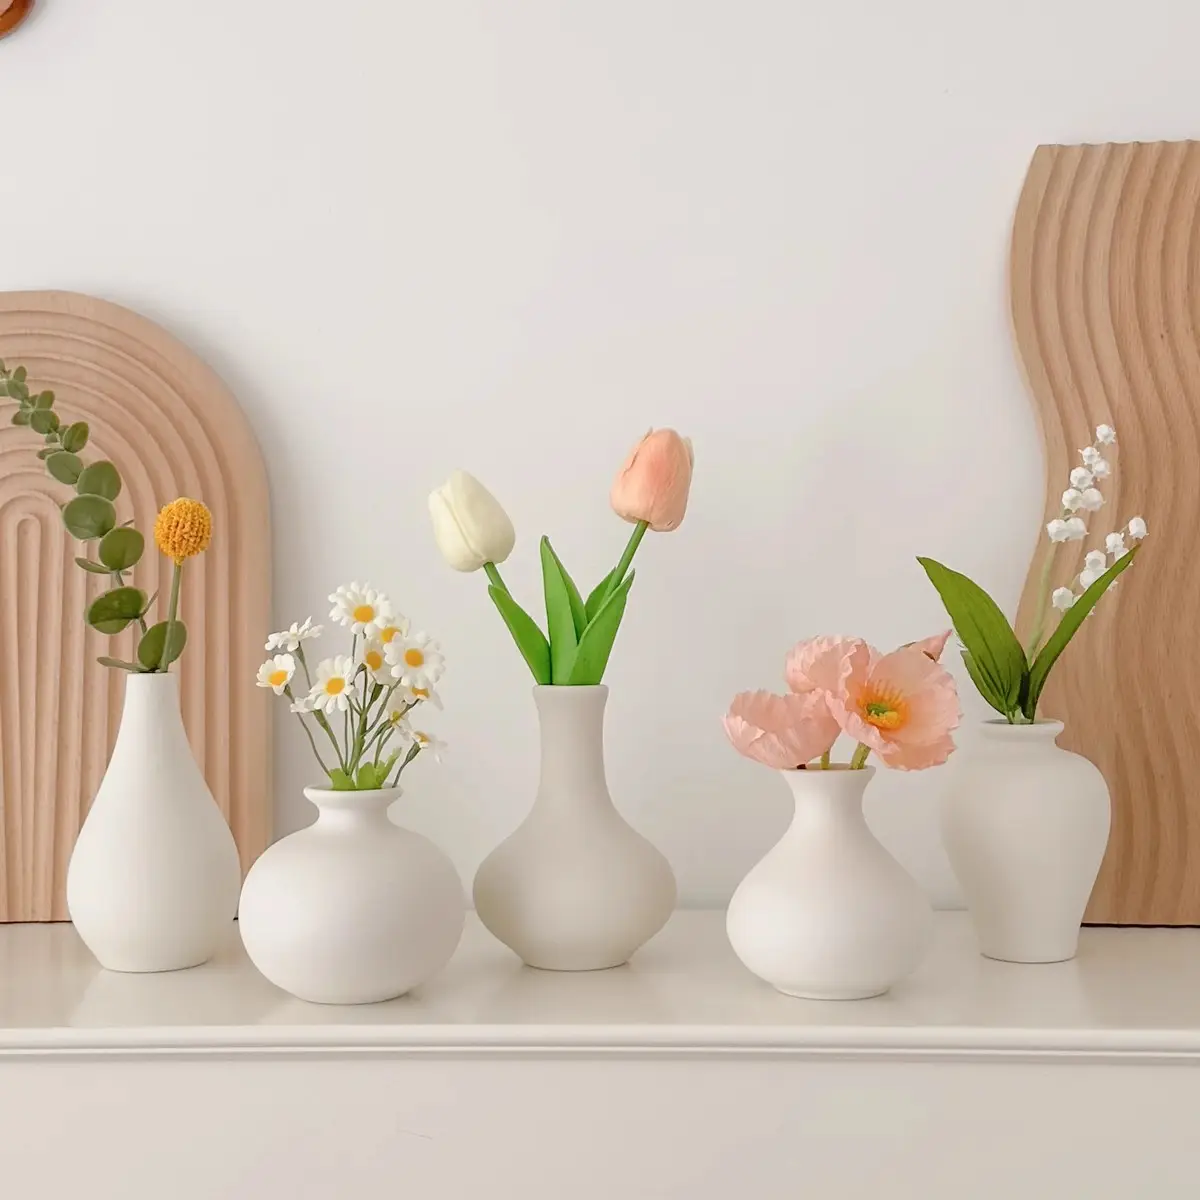 Buatan tangan minimalis murni putih bunga porselen kuncup vas keramik untuk dekorasi ruang tamu